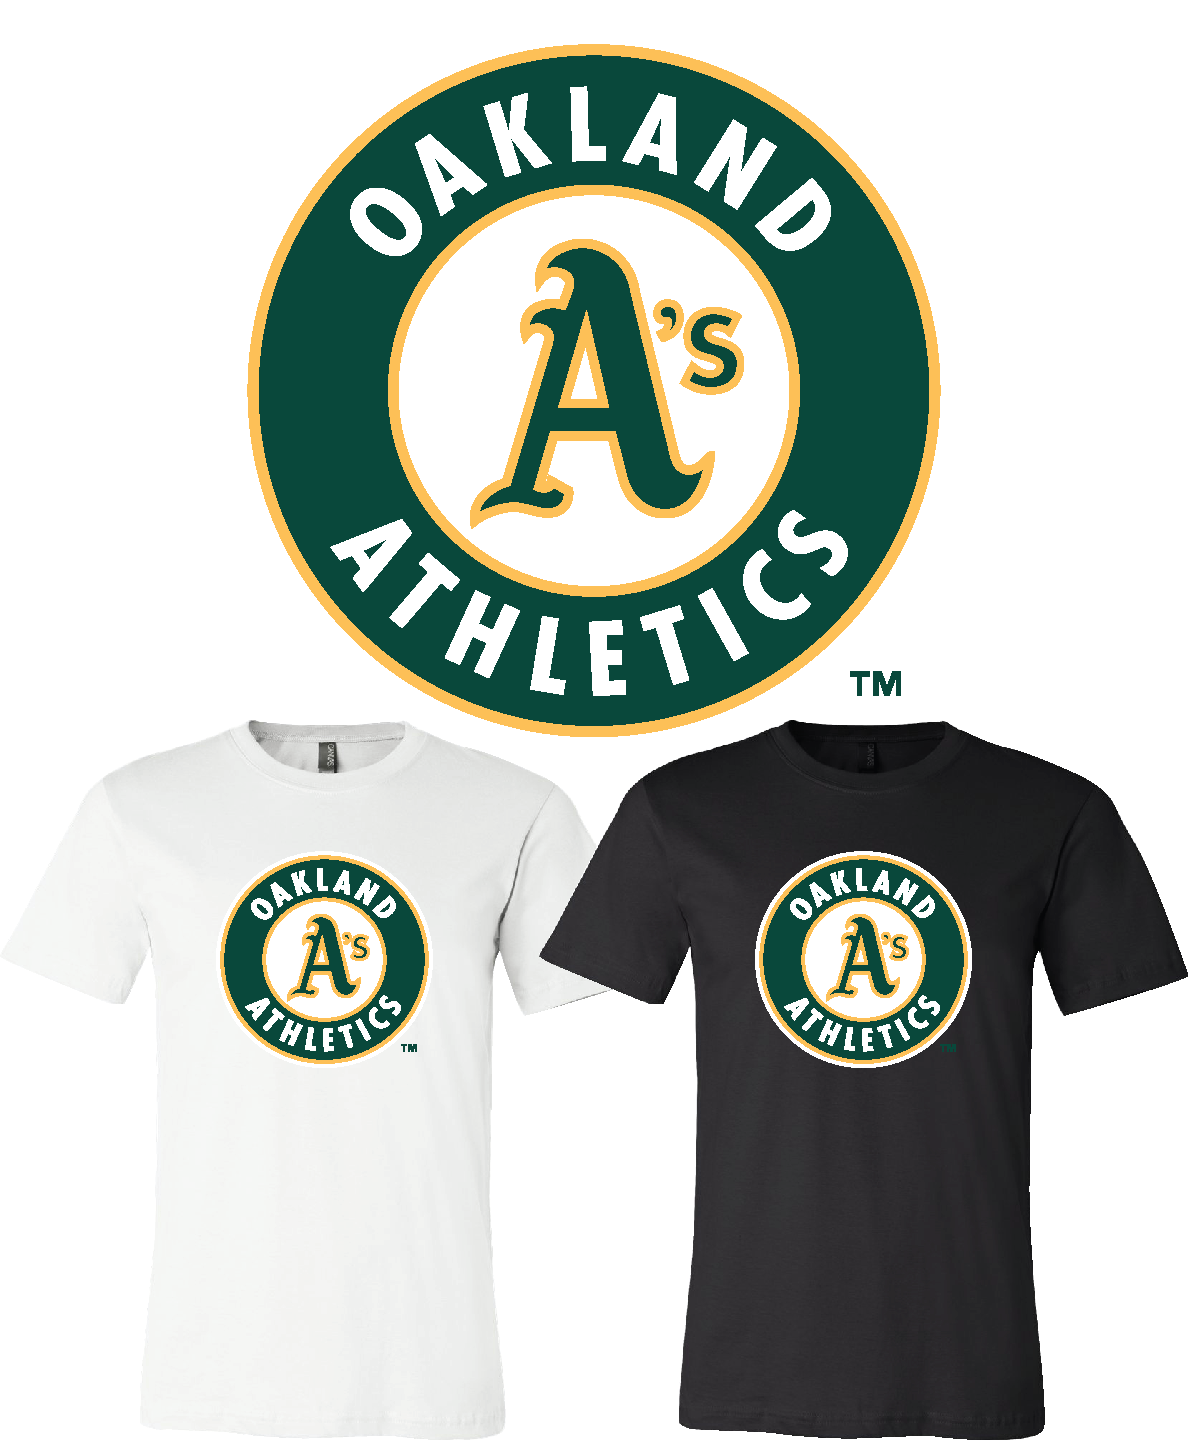 Oakland Athletics Jerseys in Oakland Athletics Team Shop 